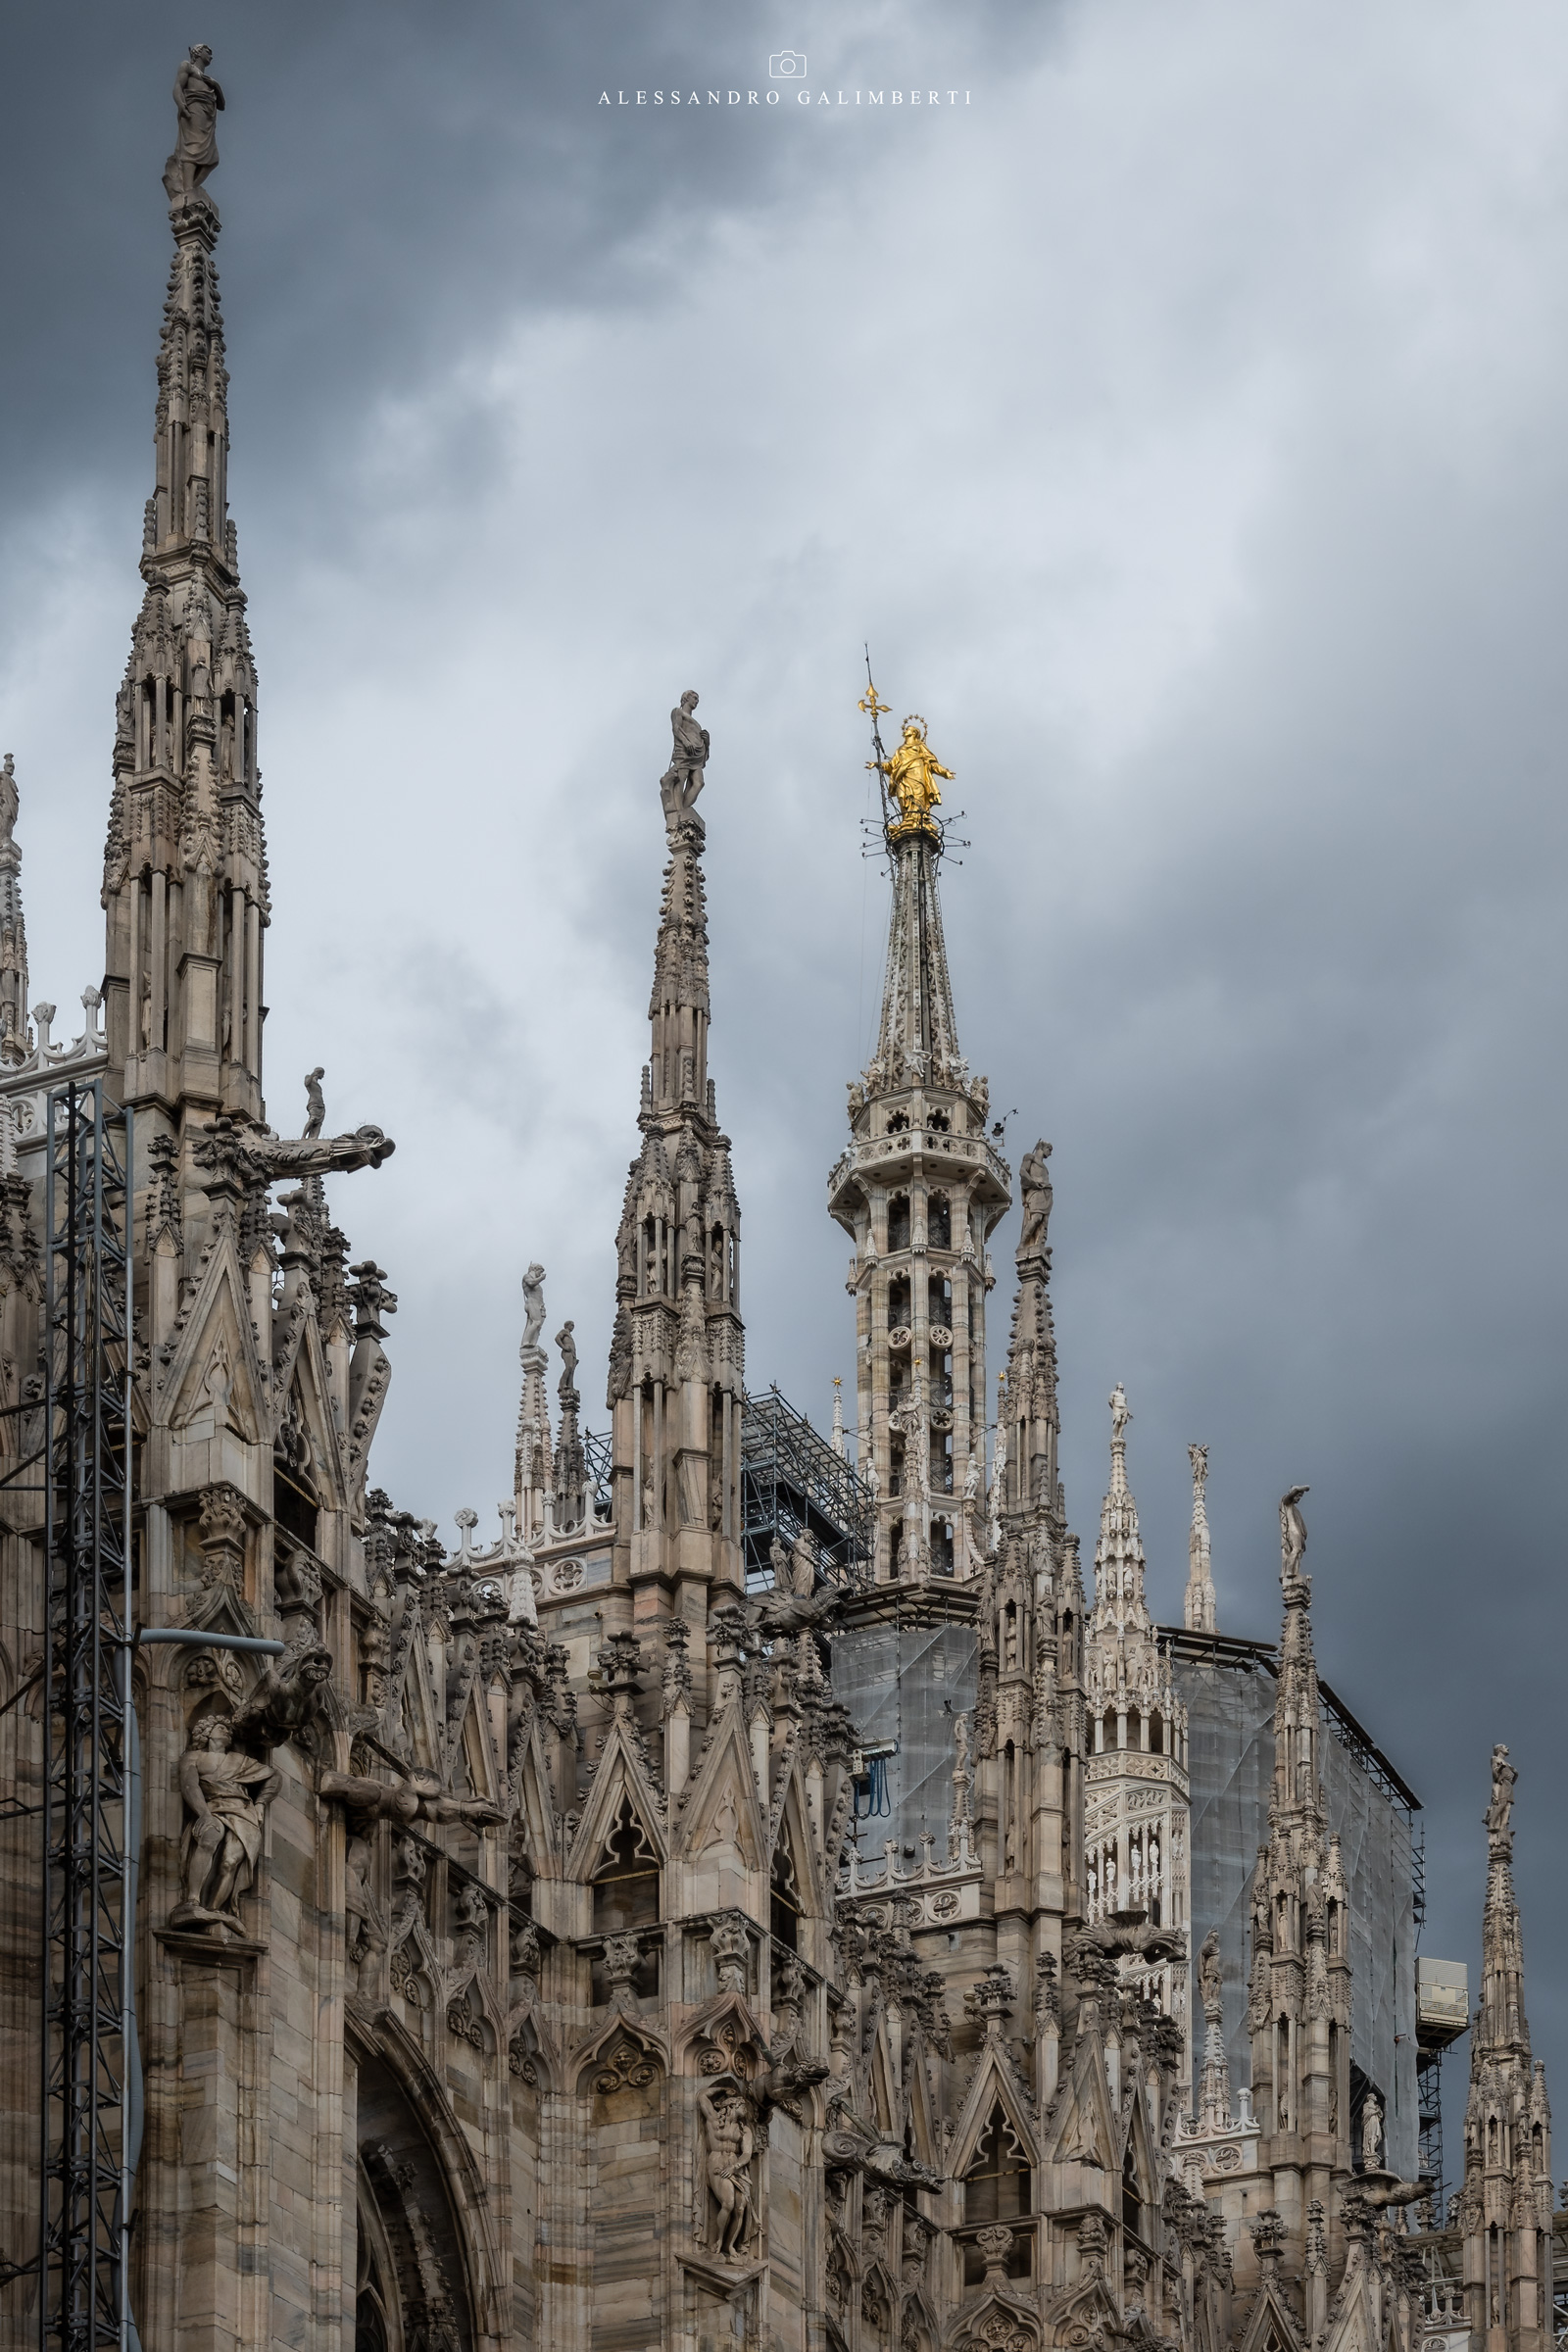 Among the spires - Duomo di Milano...